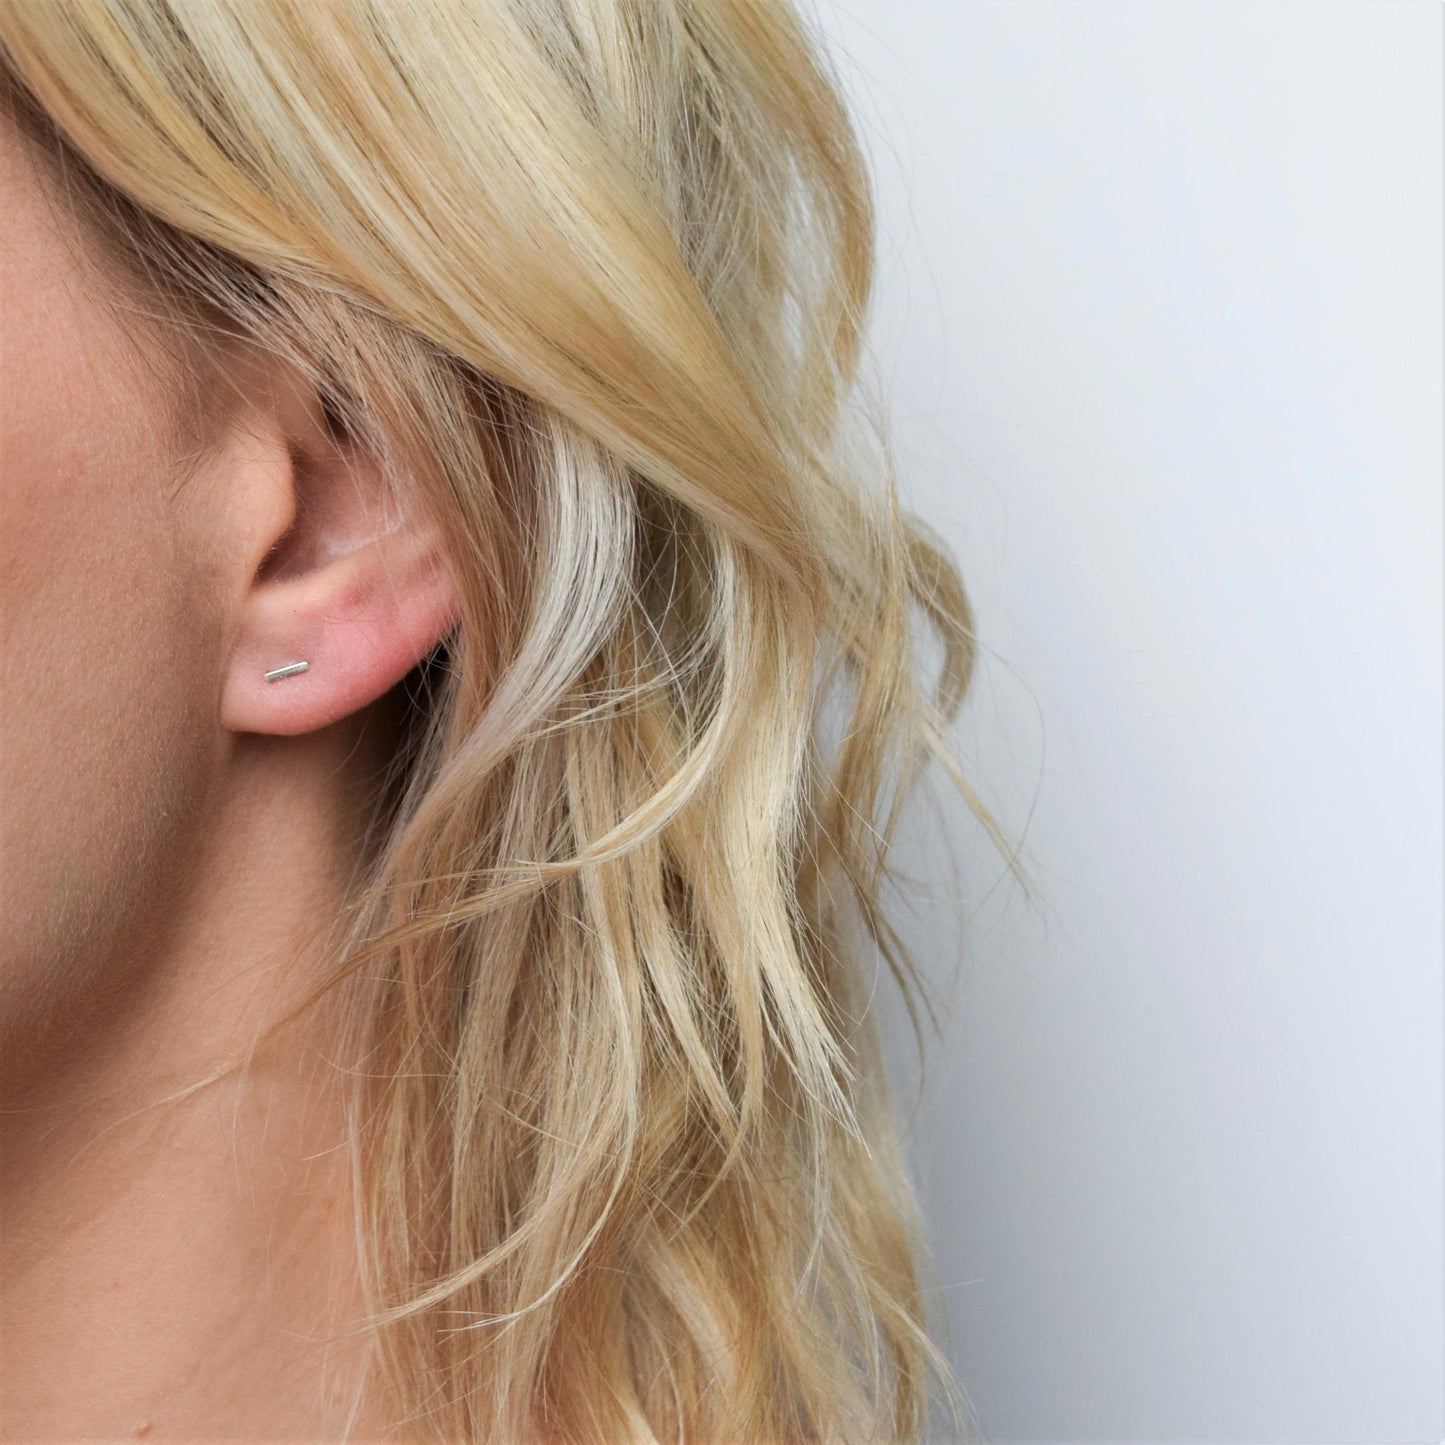 Handmade silver bar stud earrings worn by blond model